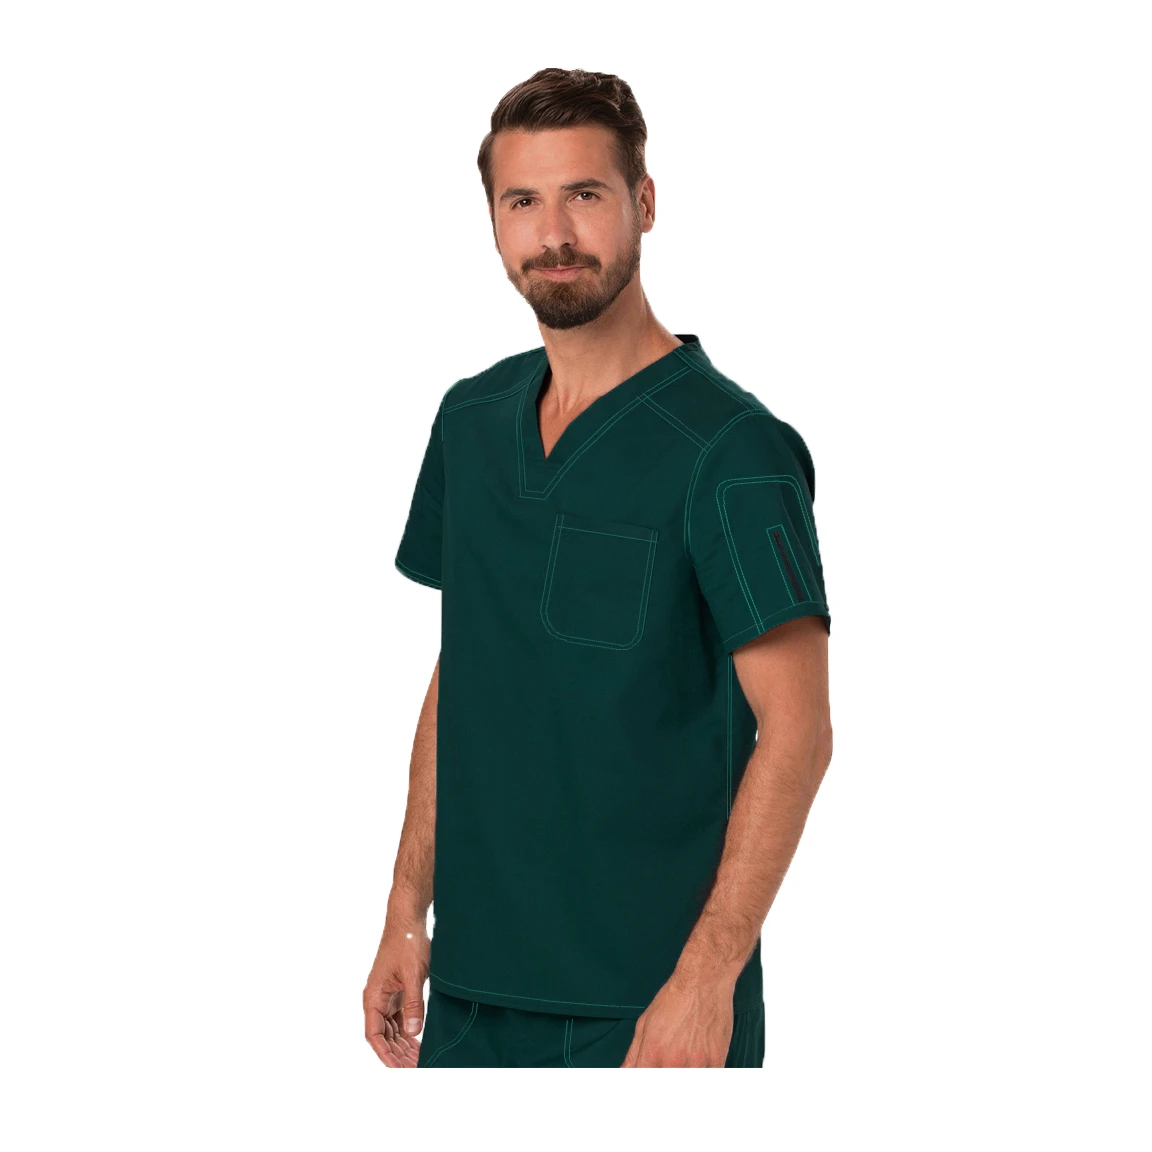 surgeon garments Pakistan